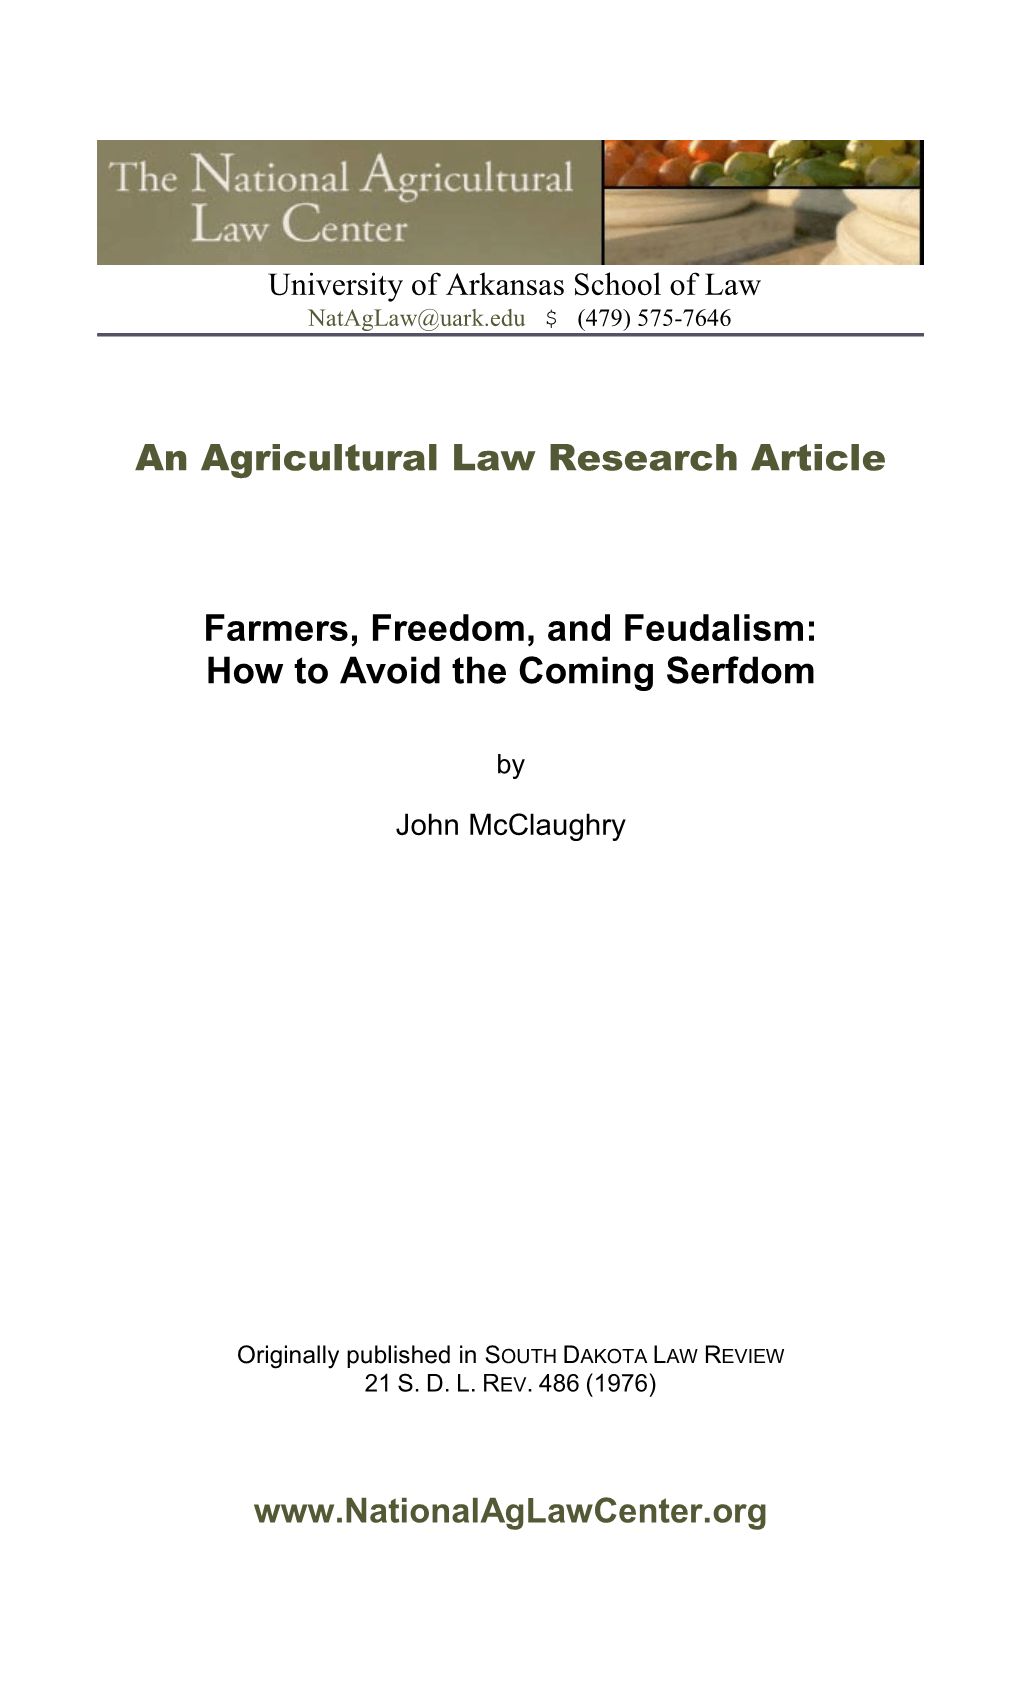 Farmers Freedom and Feudalism